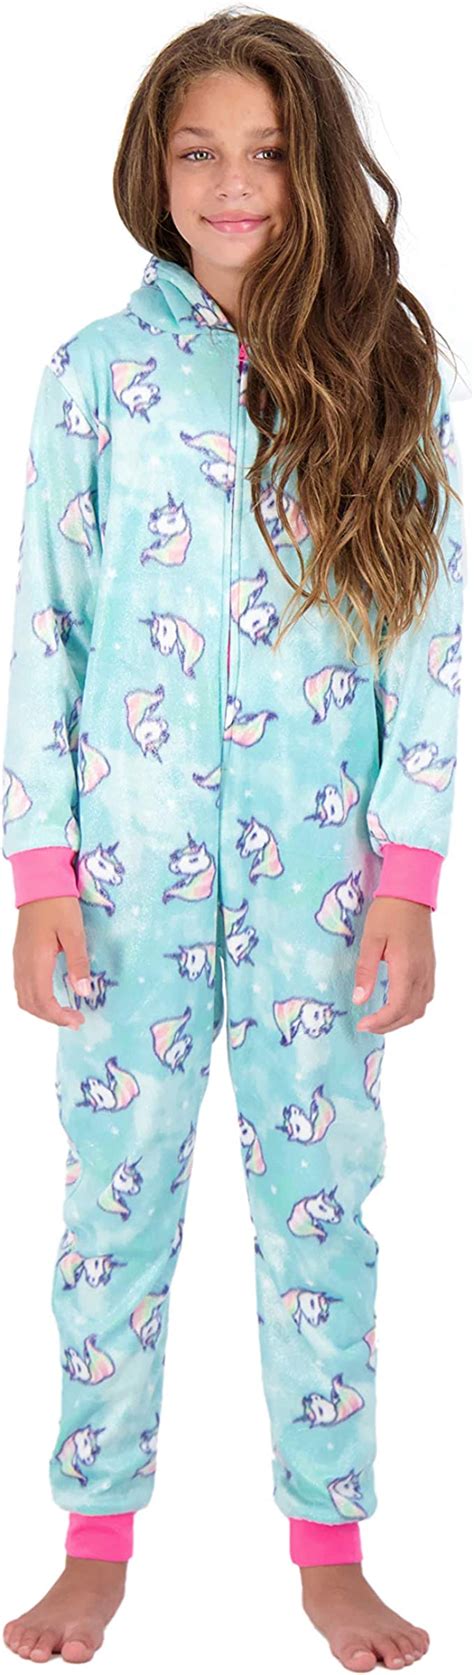 Sleep On It Girls Onesie Pajamas With Character Hood